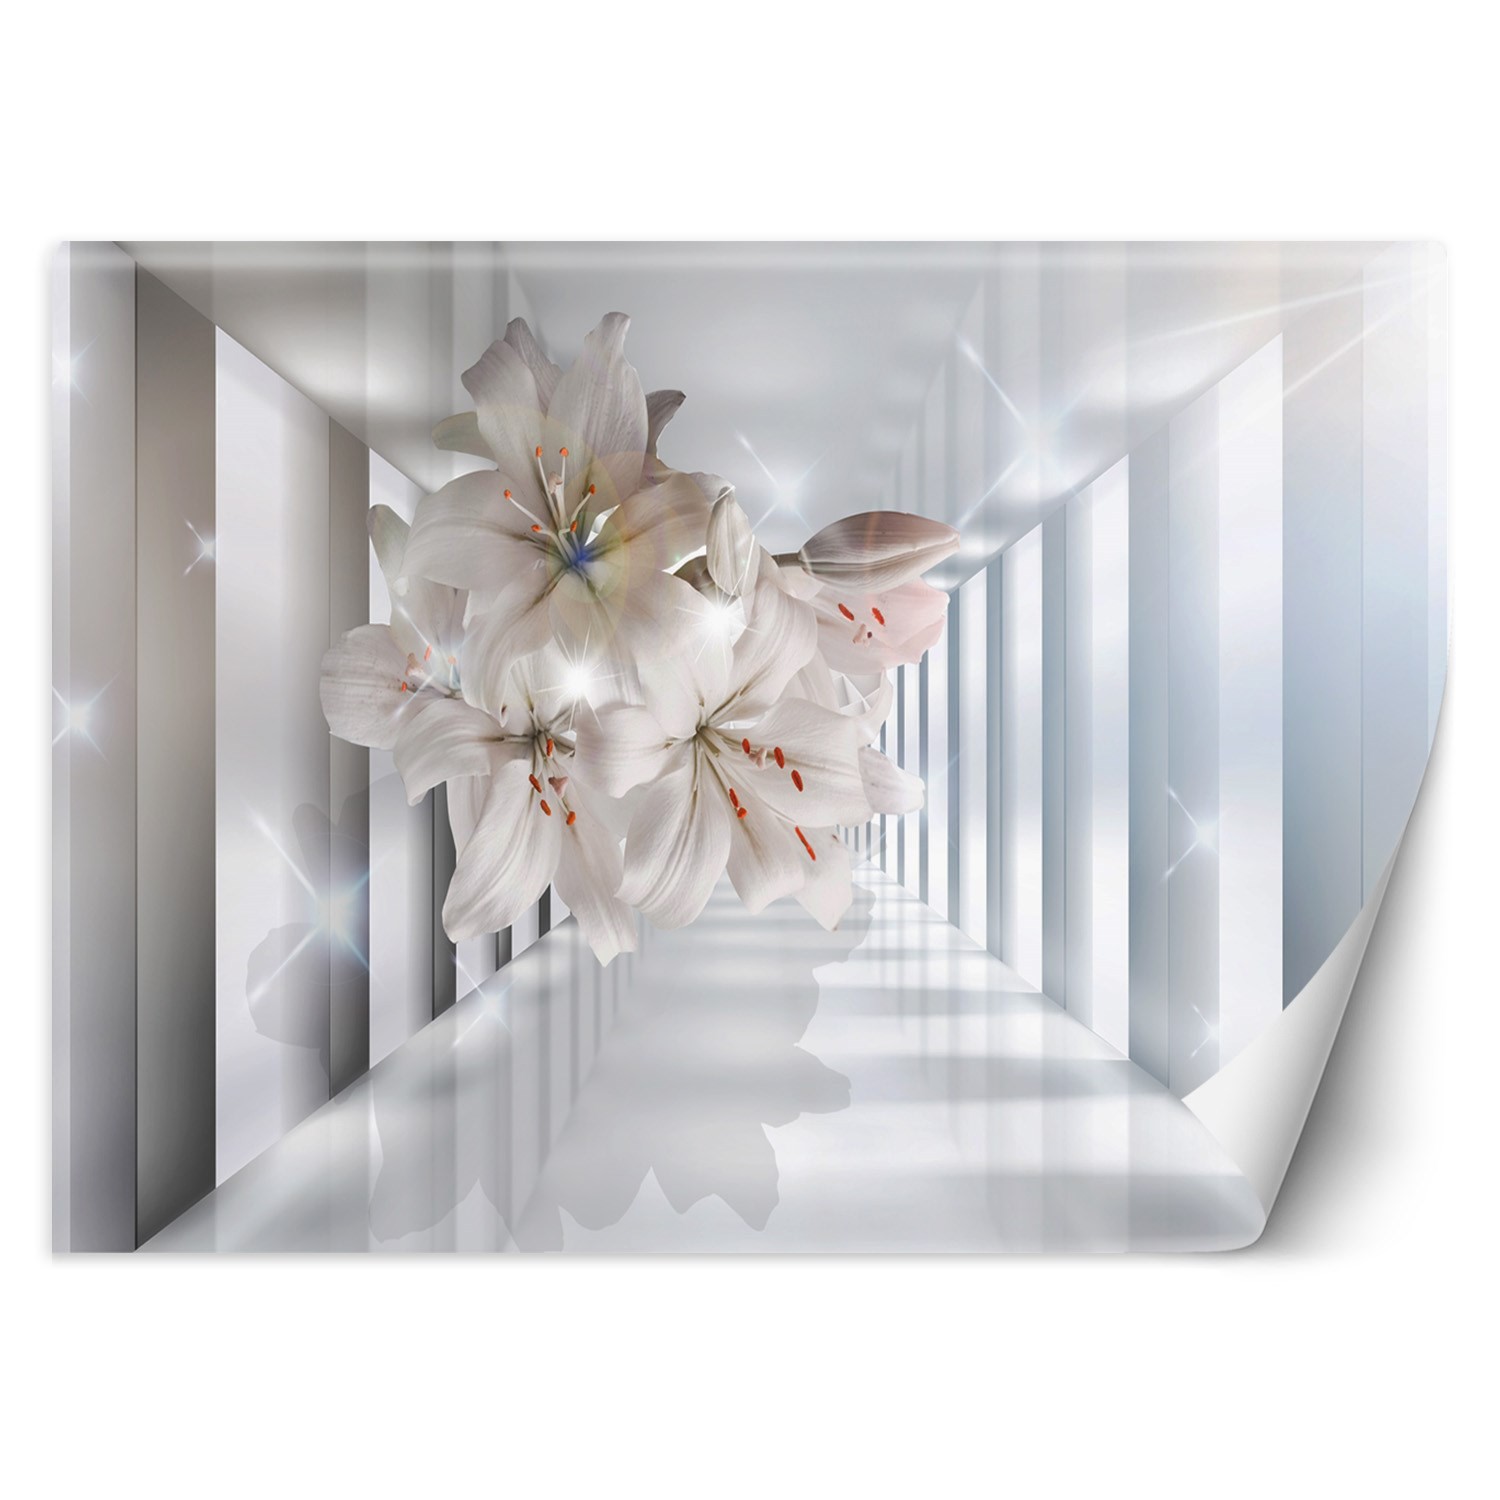 Trend24 – Behang – Bloemen In De Corridor 3D – Vliesbehang – Fotobehang 3D – Behang Woonkamer – 350×245 cm – Incl. behanglijm